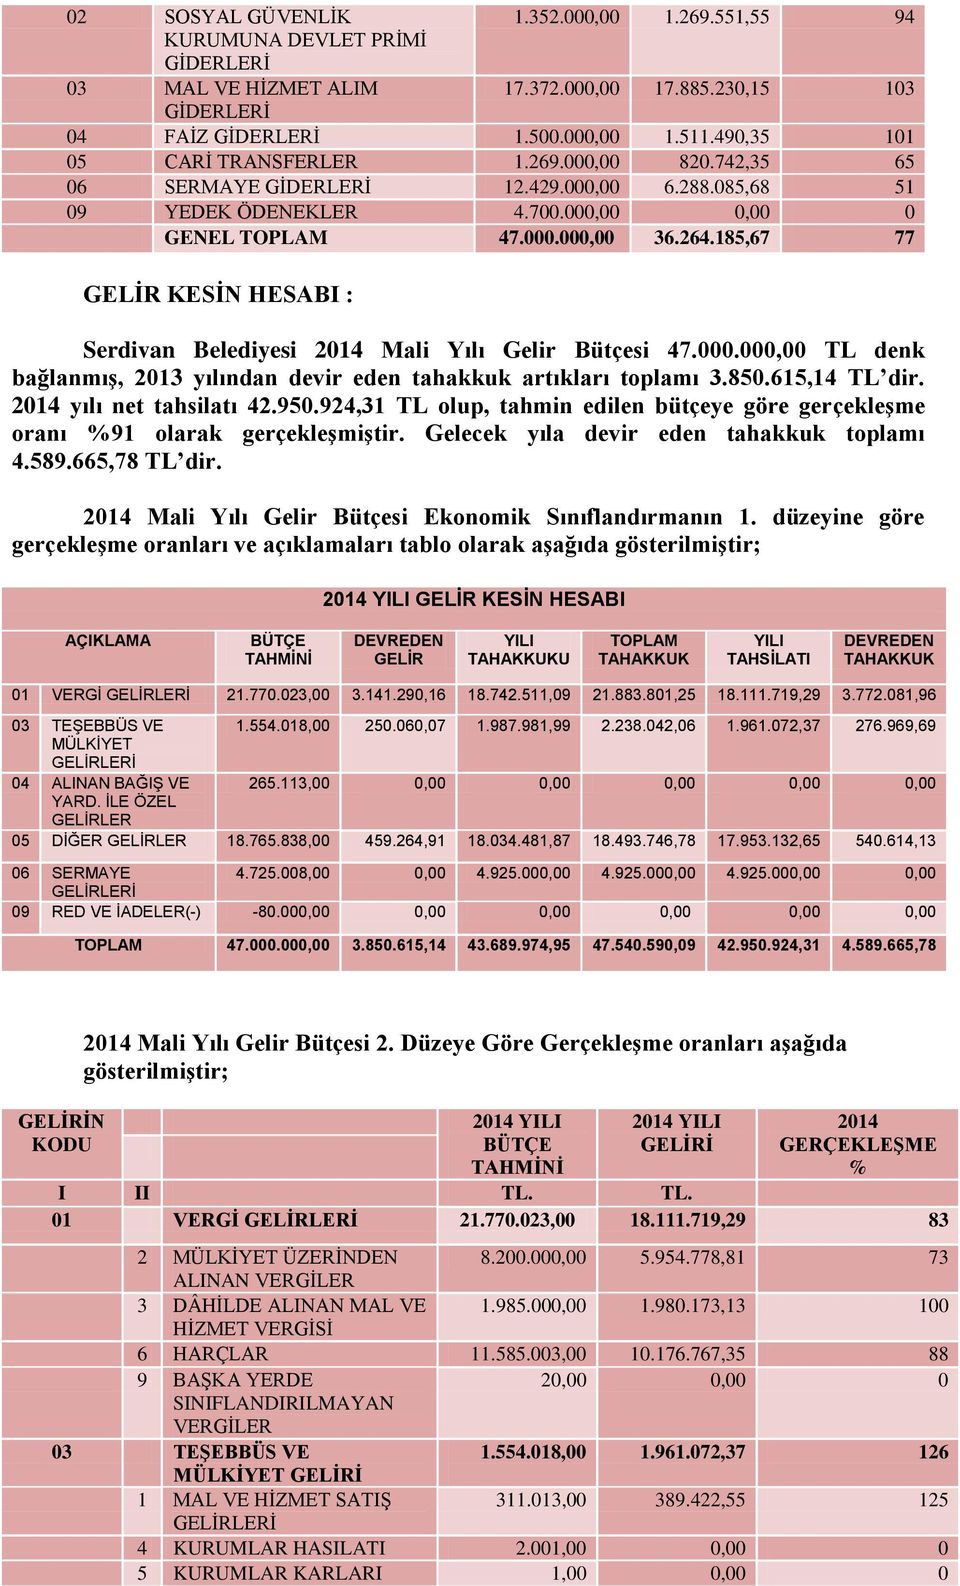 185,67 77 GELĠR KESĠN HESABI : Serdivan Belediyesi 2014 Mali Yılı Gelir Bütçesi 47.000.000,00 TL denk bağlanmıģ, 2013 yılından devir eden tahakkuk artıkları toplamı 3.850.615,14 TL dir.